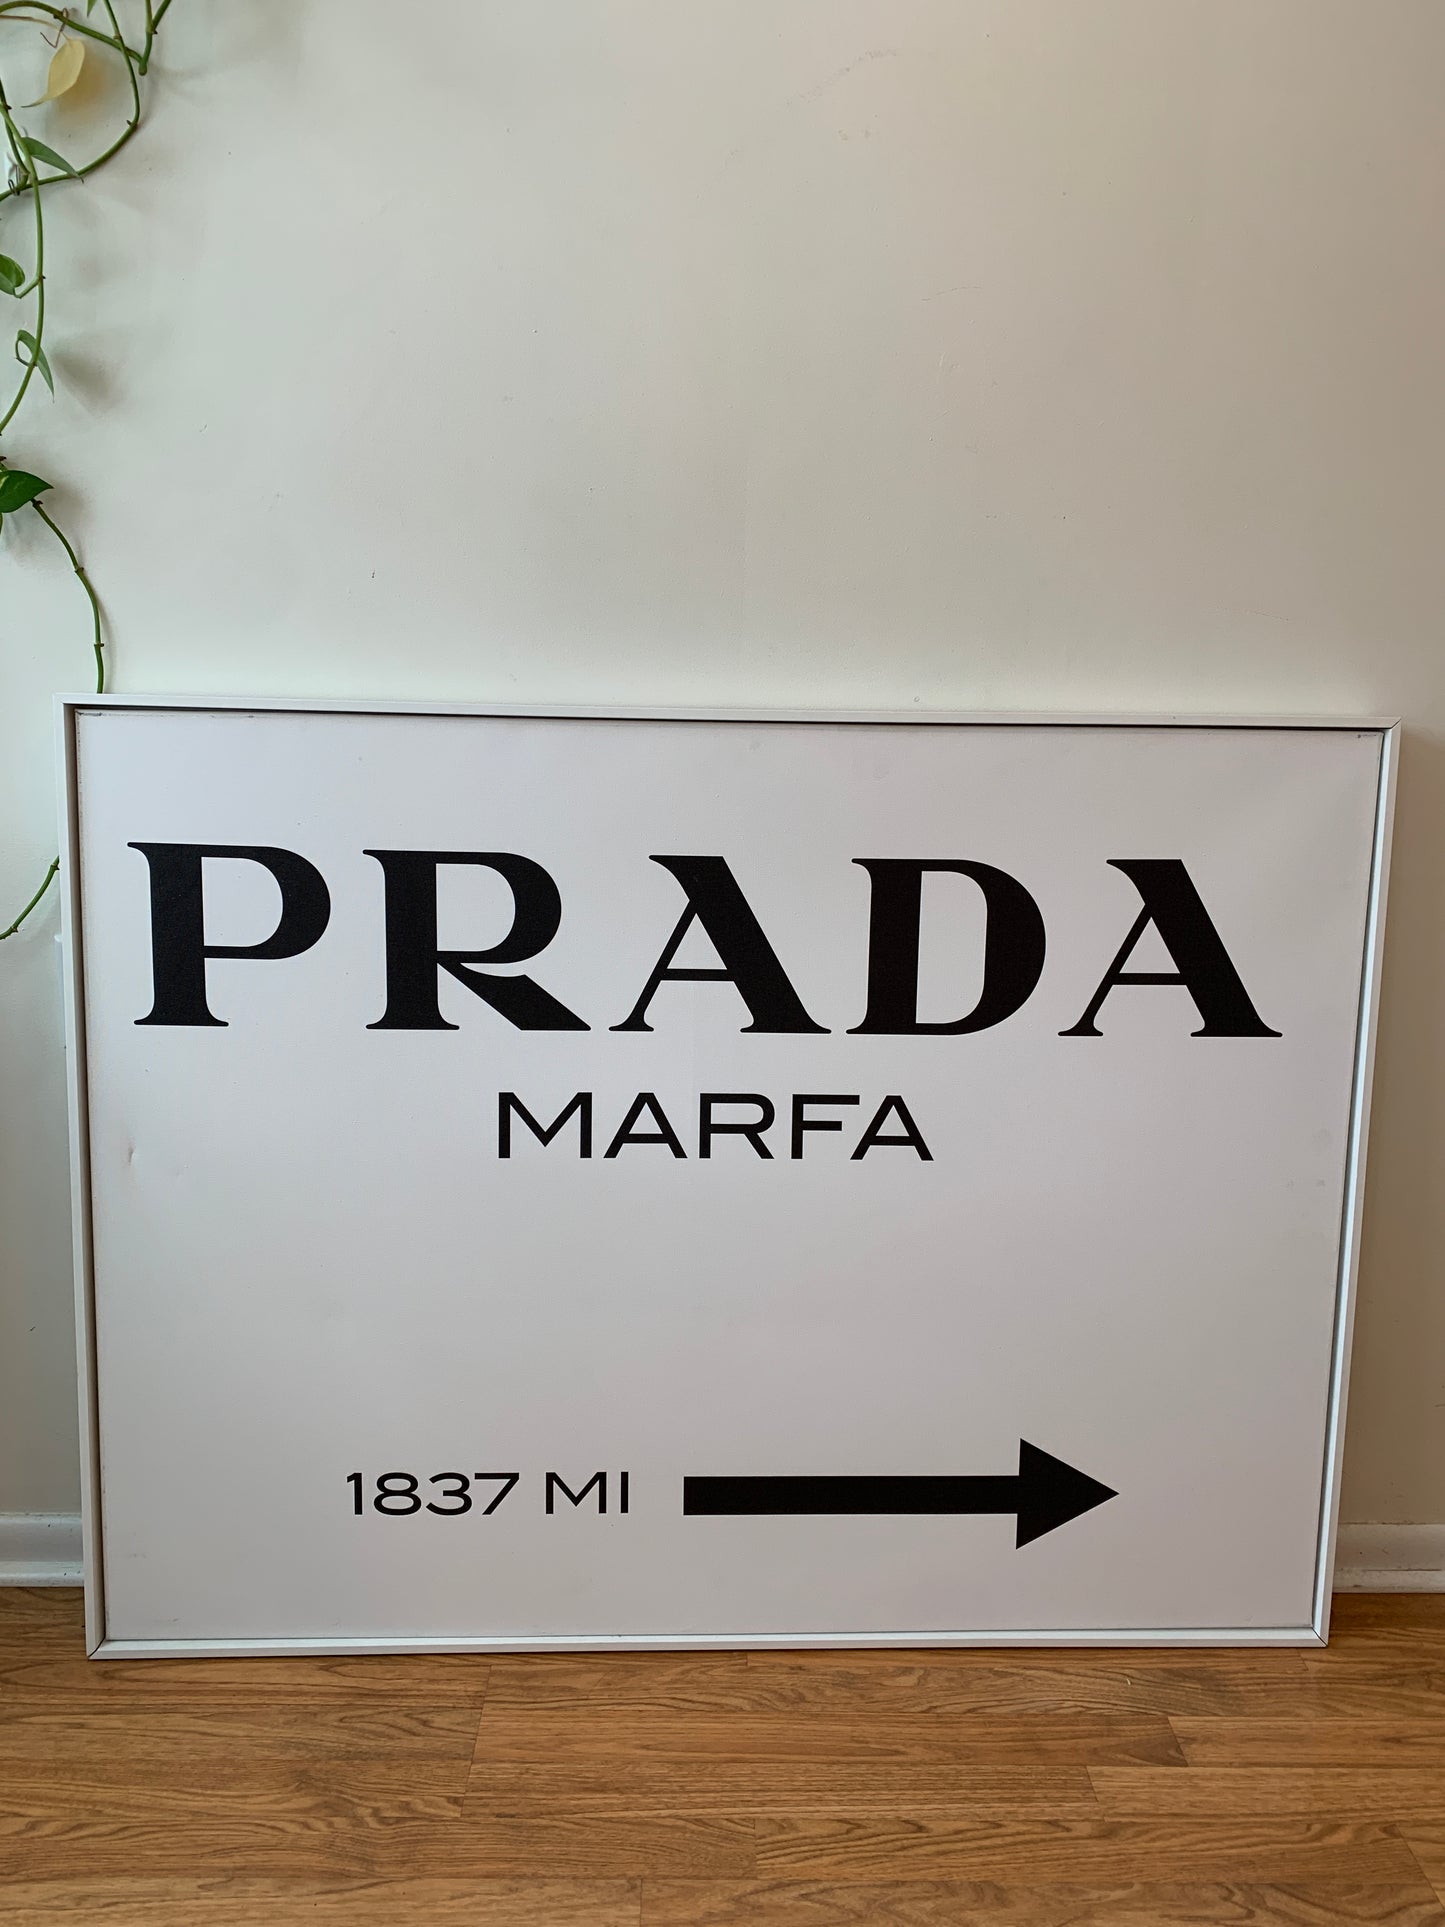 Prada Marfa Large Canvas Painting